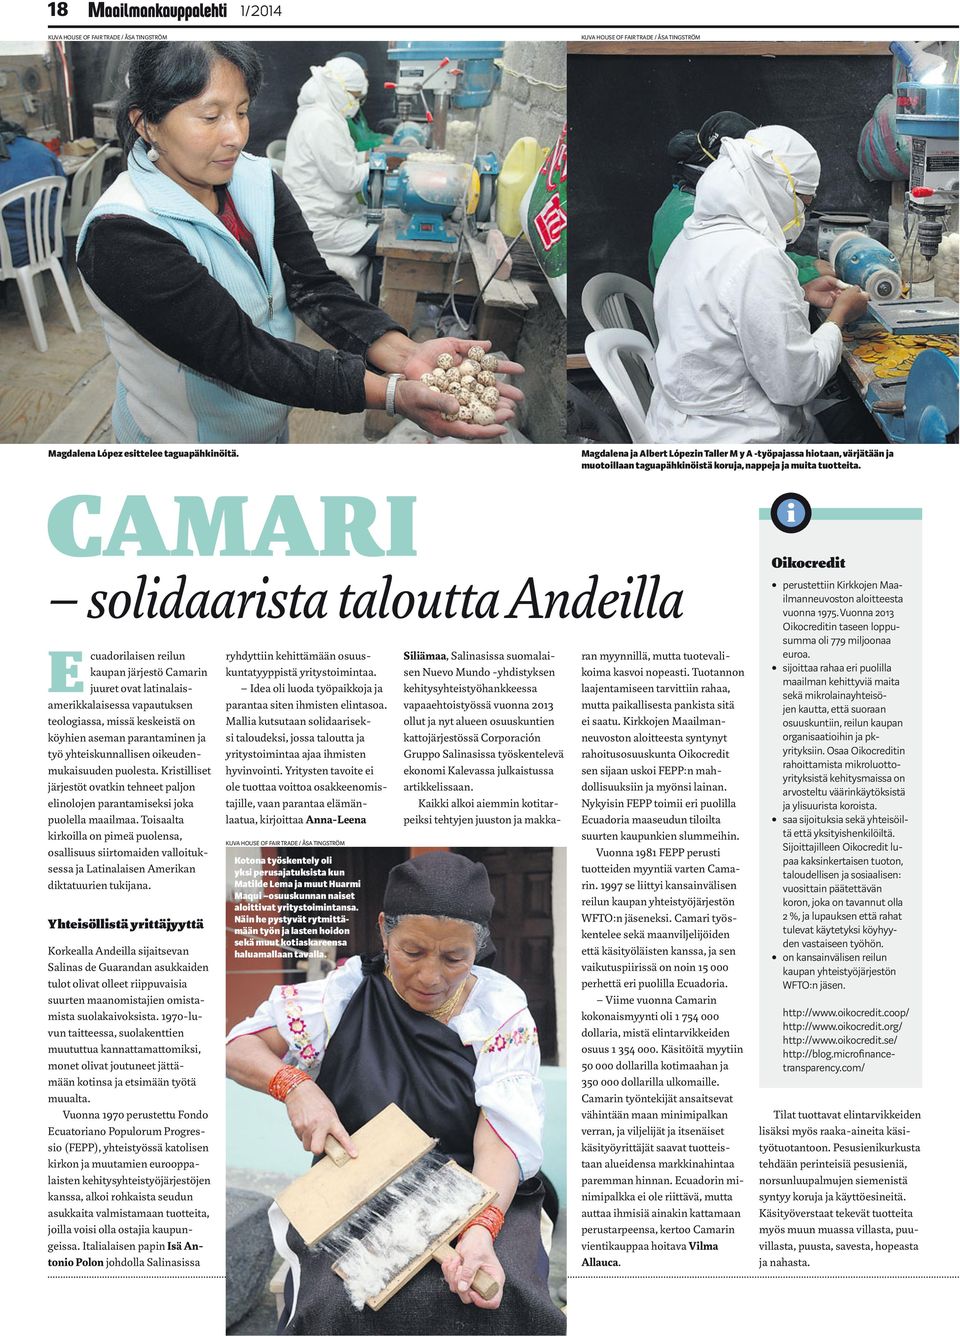 CAMARI solidaarista taloutta Andeilla E cuadorilaisen reilun kaupan järjestö Camarin juuret ovat latinalaisamerikkalaisessa vapautuksen teologiassa, missä keskeistä on köyhien aseman parantaminen ja